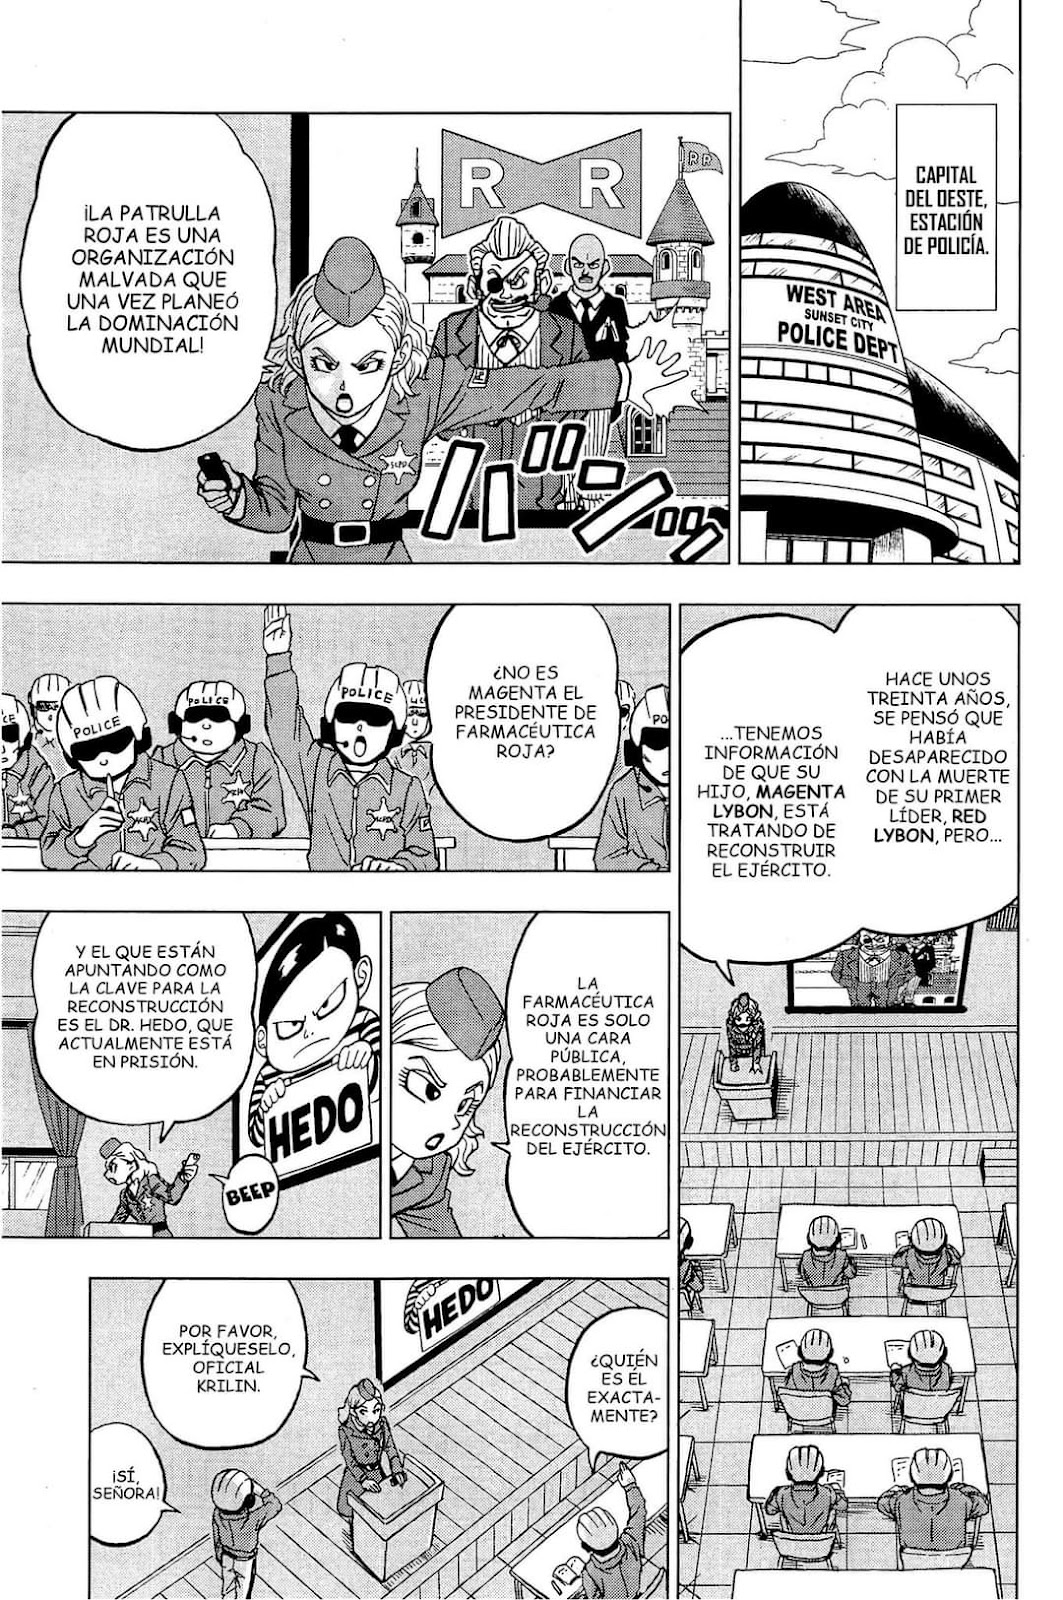 Dragon Ball Super Manga 91 Español Completo